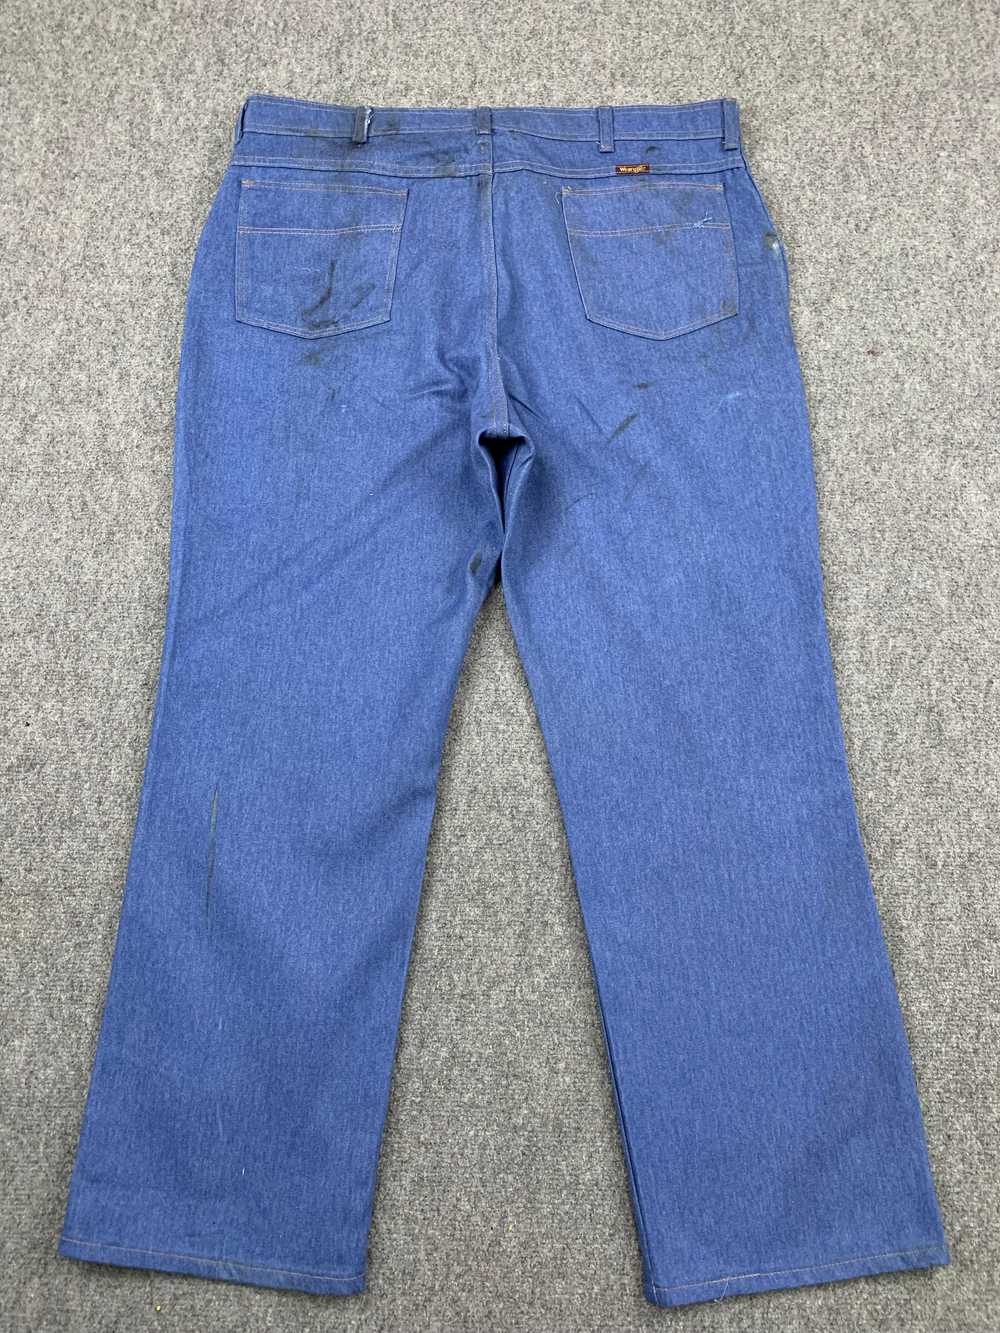 Vintage - Vintage Wrangler Blue Denim Jeans - image 3